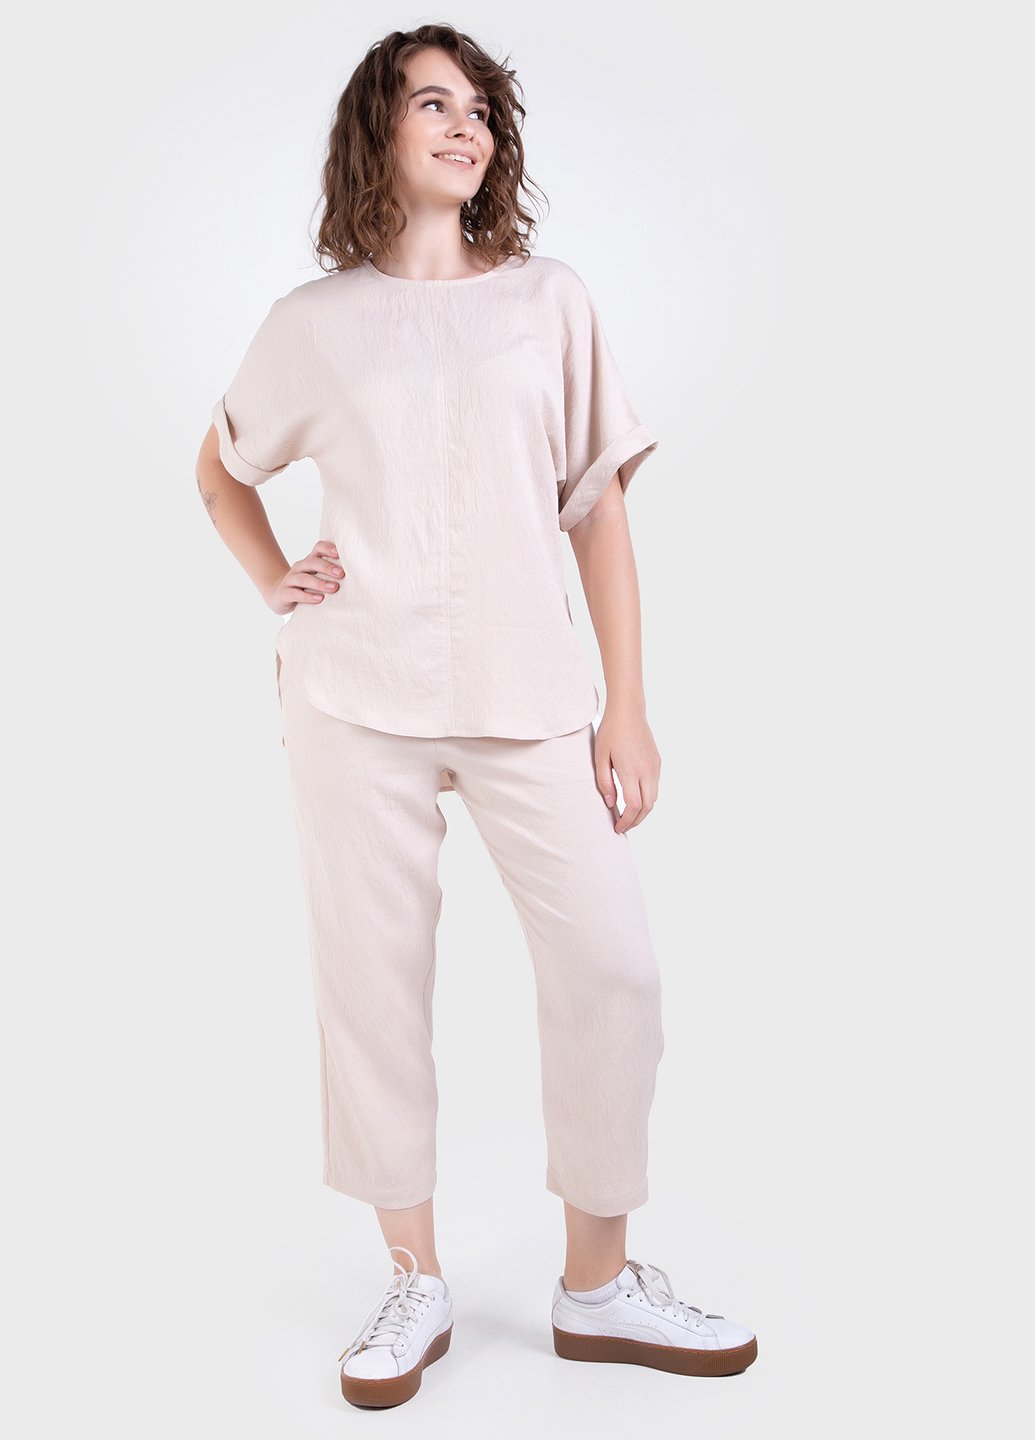 Купить Летний костюм женский двойка бежевого цвета: брюки, футболка Merlini Санремо 100000149, размер 42-44 в интернет-магазине